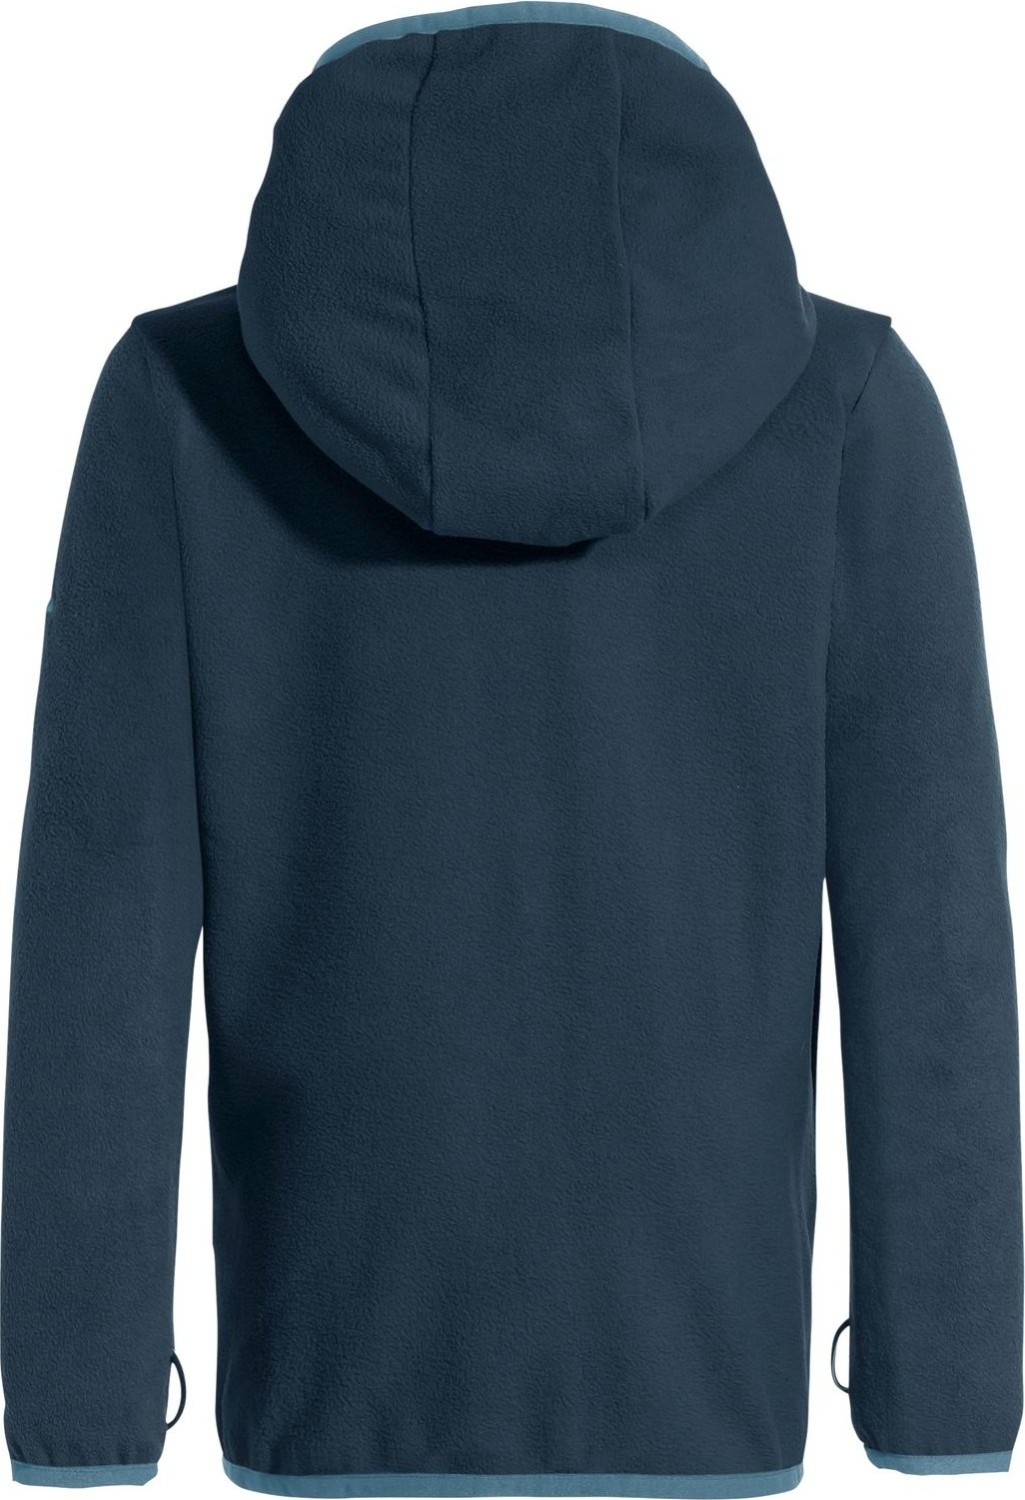 Vaude Pulex Hooded € (2024) Jacke dark ab Fleece Deutschland 26,76 Geizhals sea Preisvergleich 